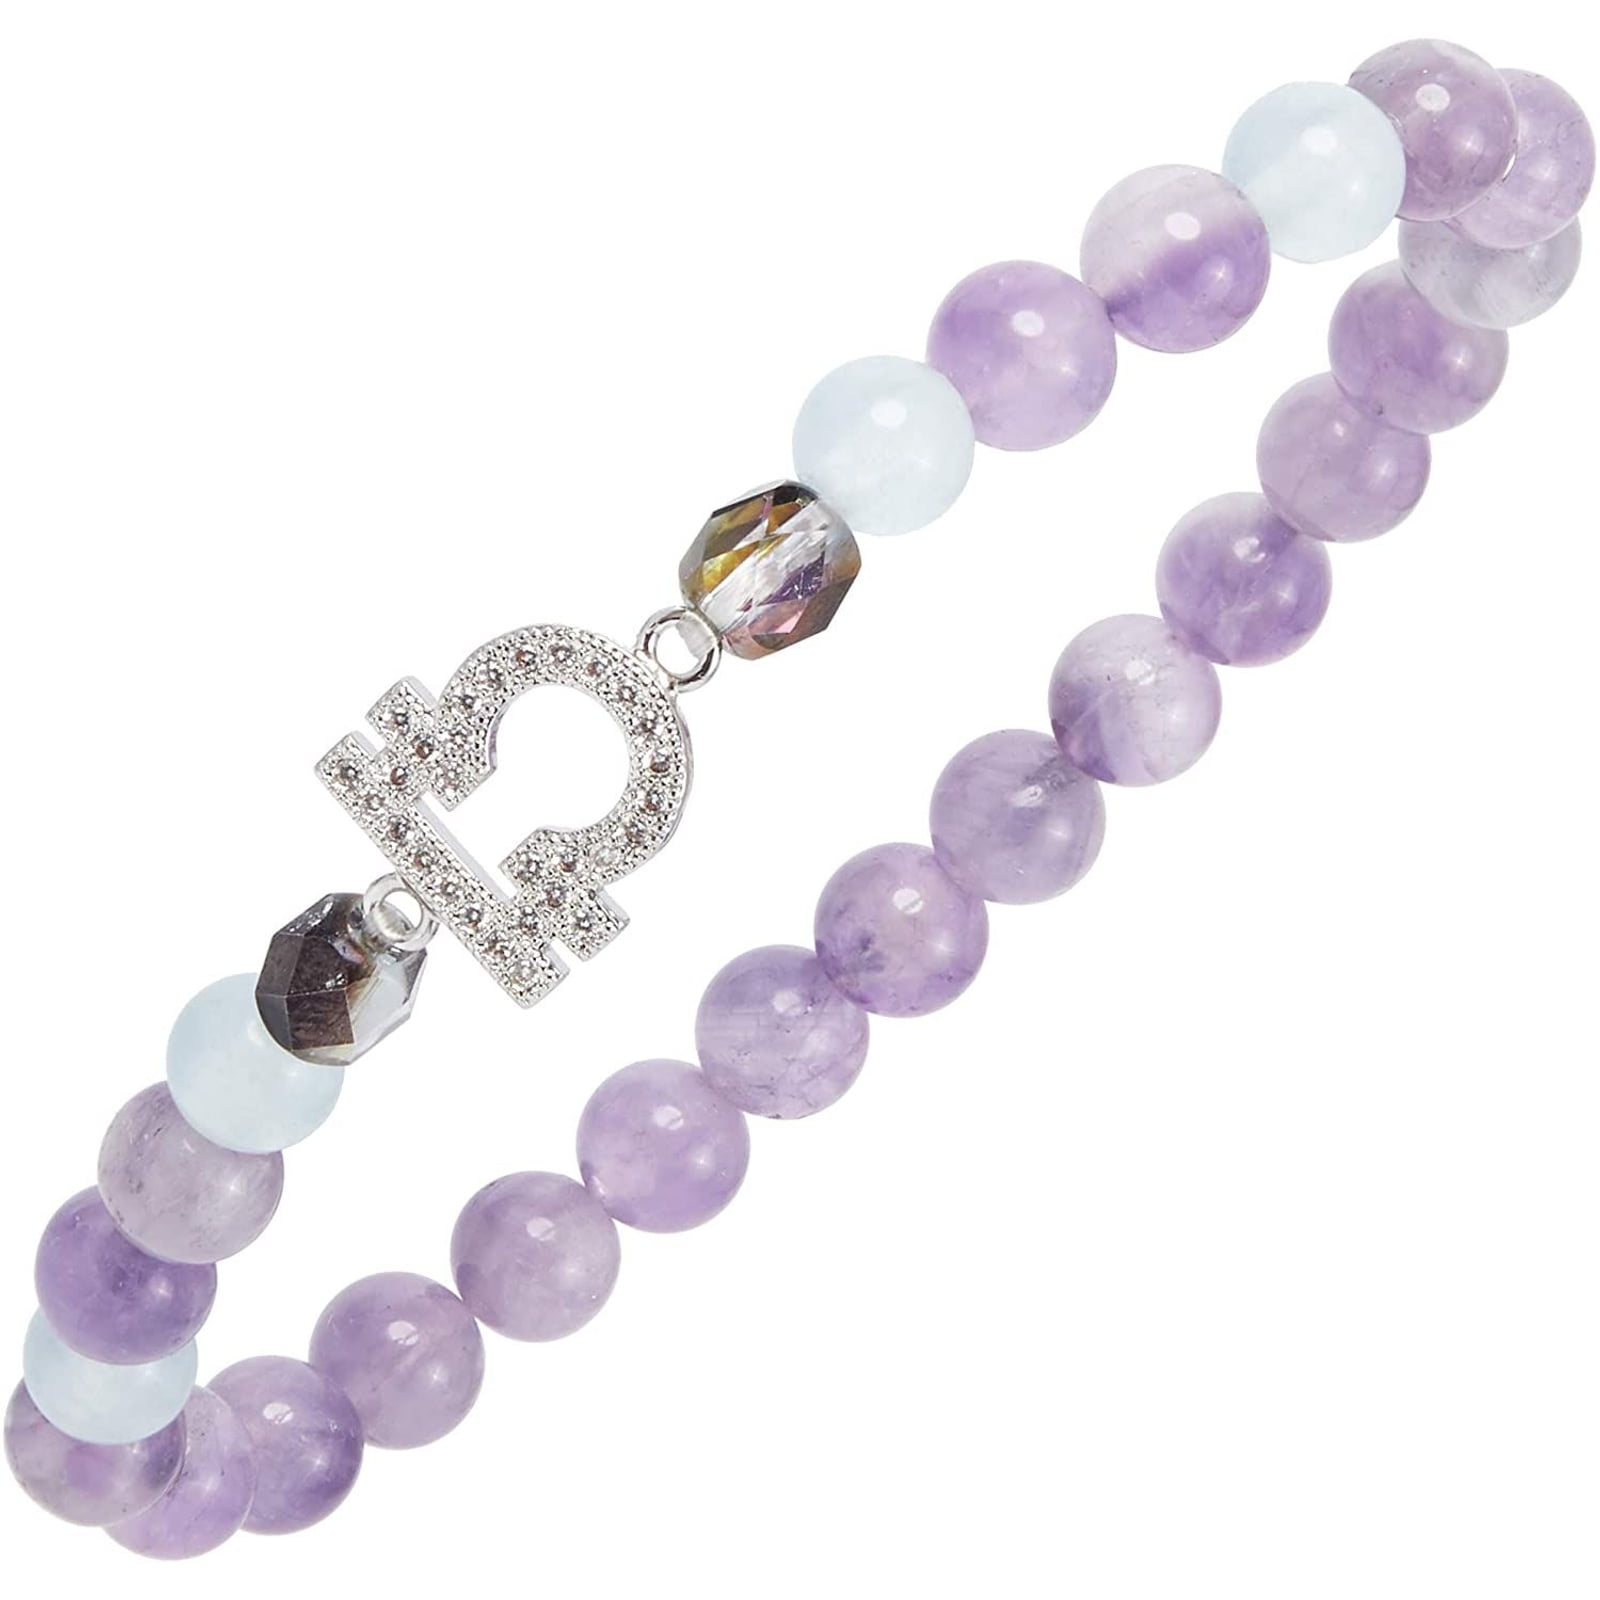 Moonstone bracelet Moonstone Jewelry blue gemstone moonstone crystal bracelet Christmas gift for her gold bracelet